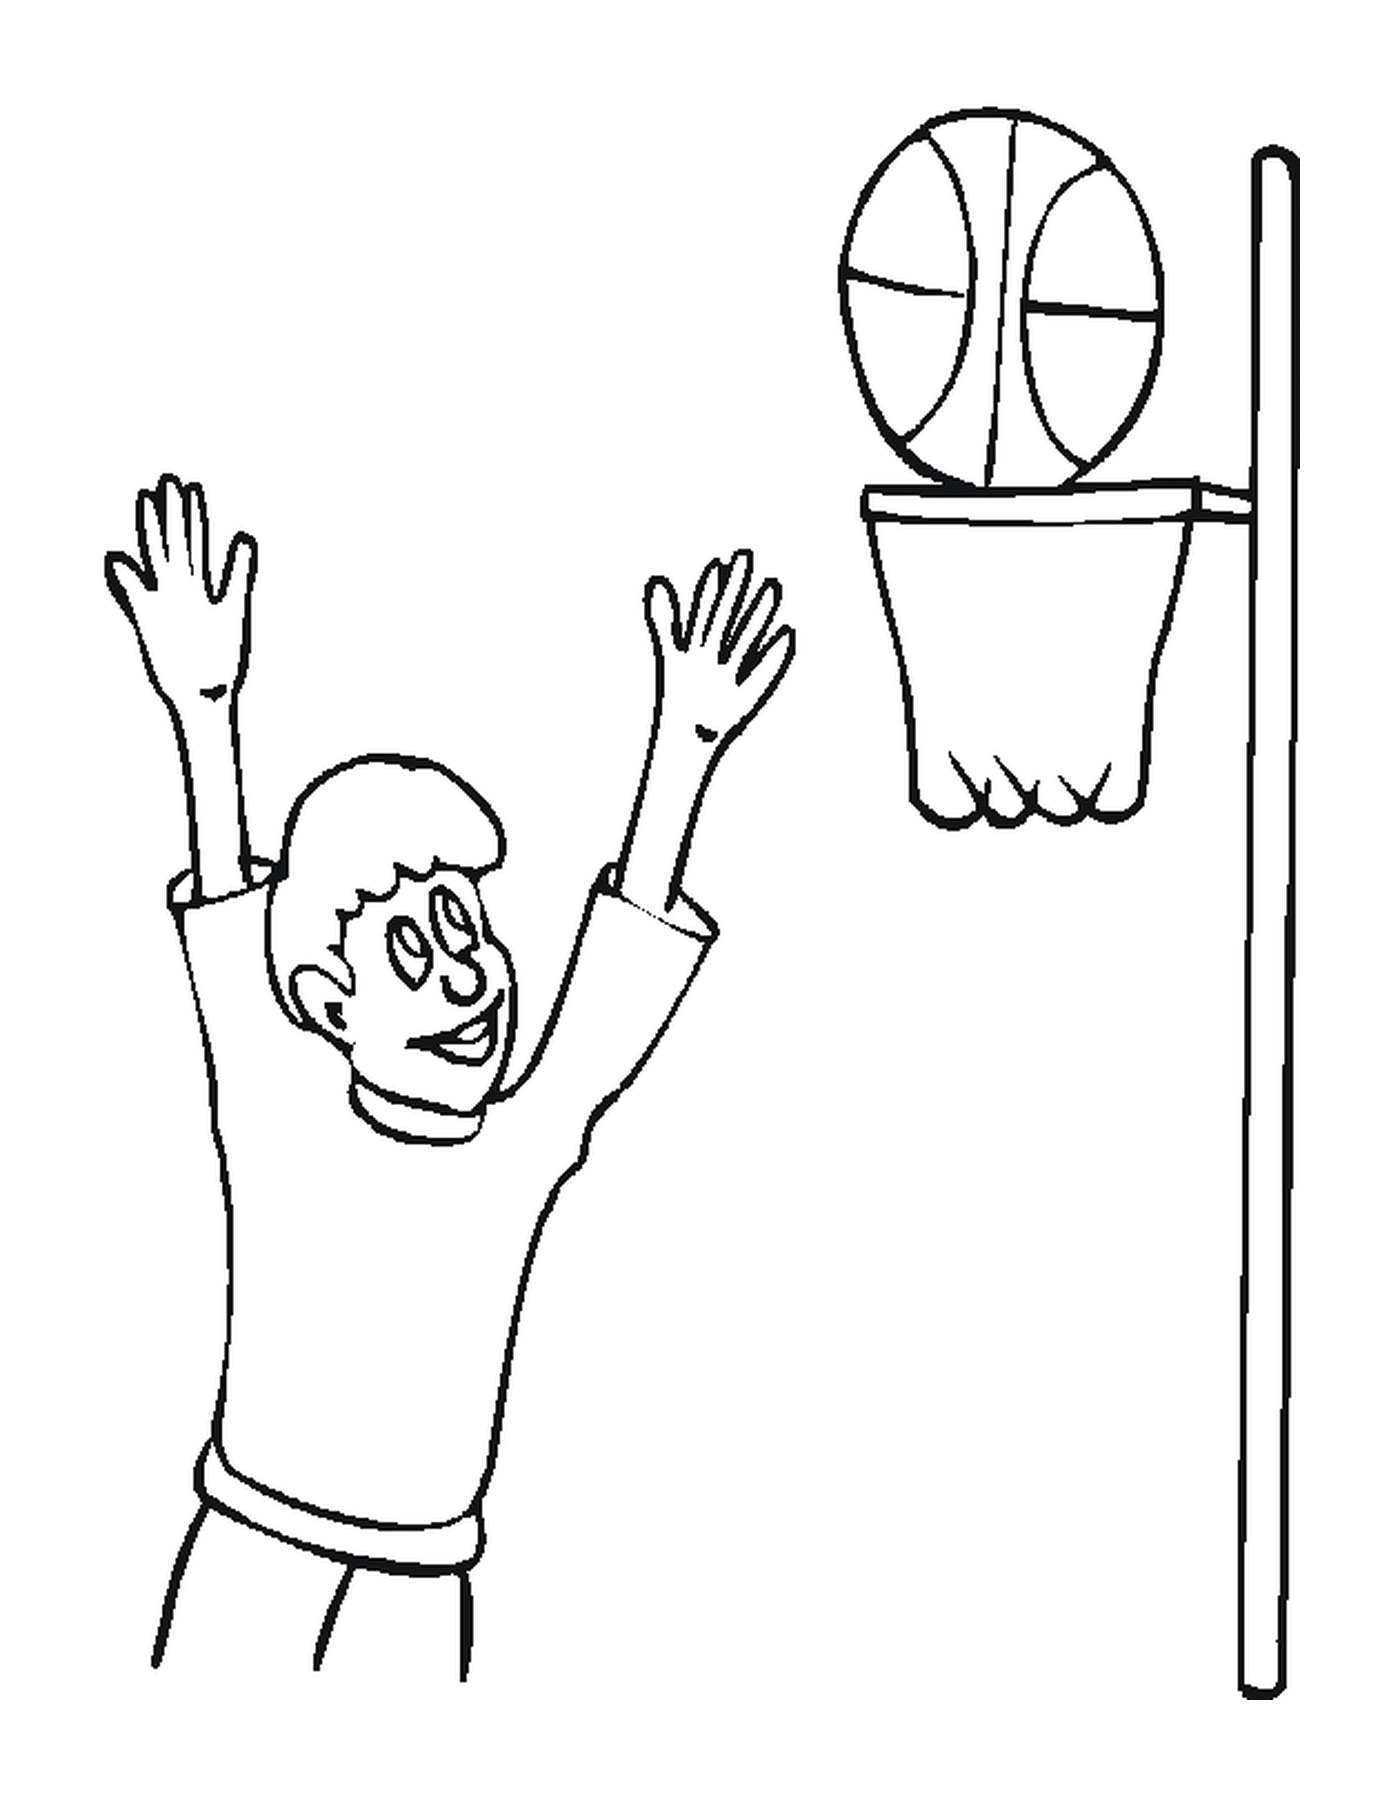  Ein Basketballspieler spielt in einem Raum 